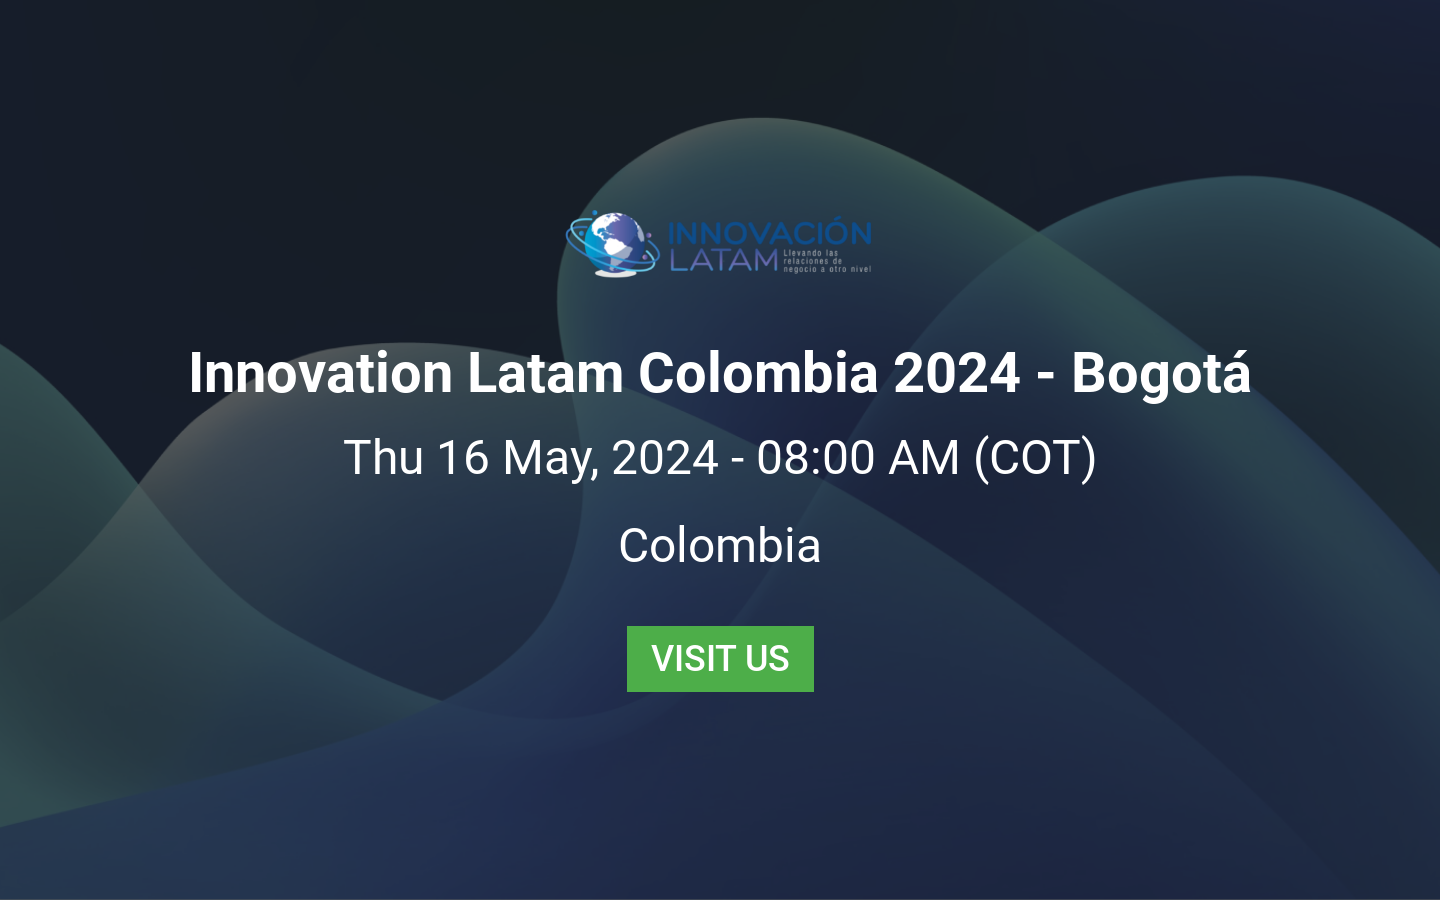 Innovation Latam Colombia 2024 Bogotá